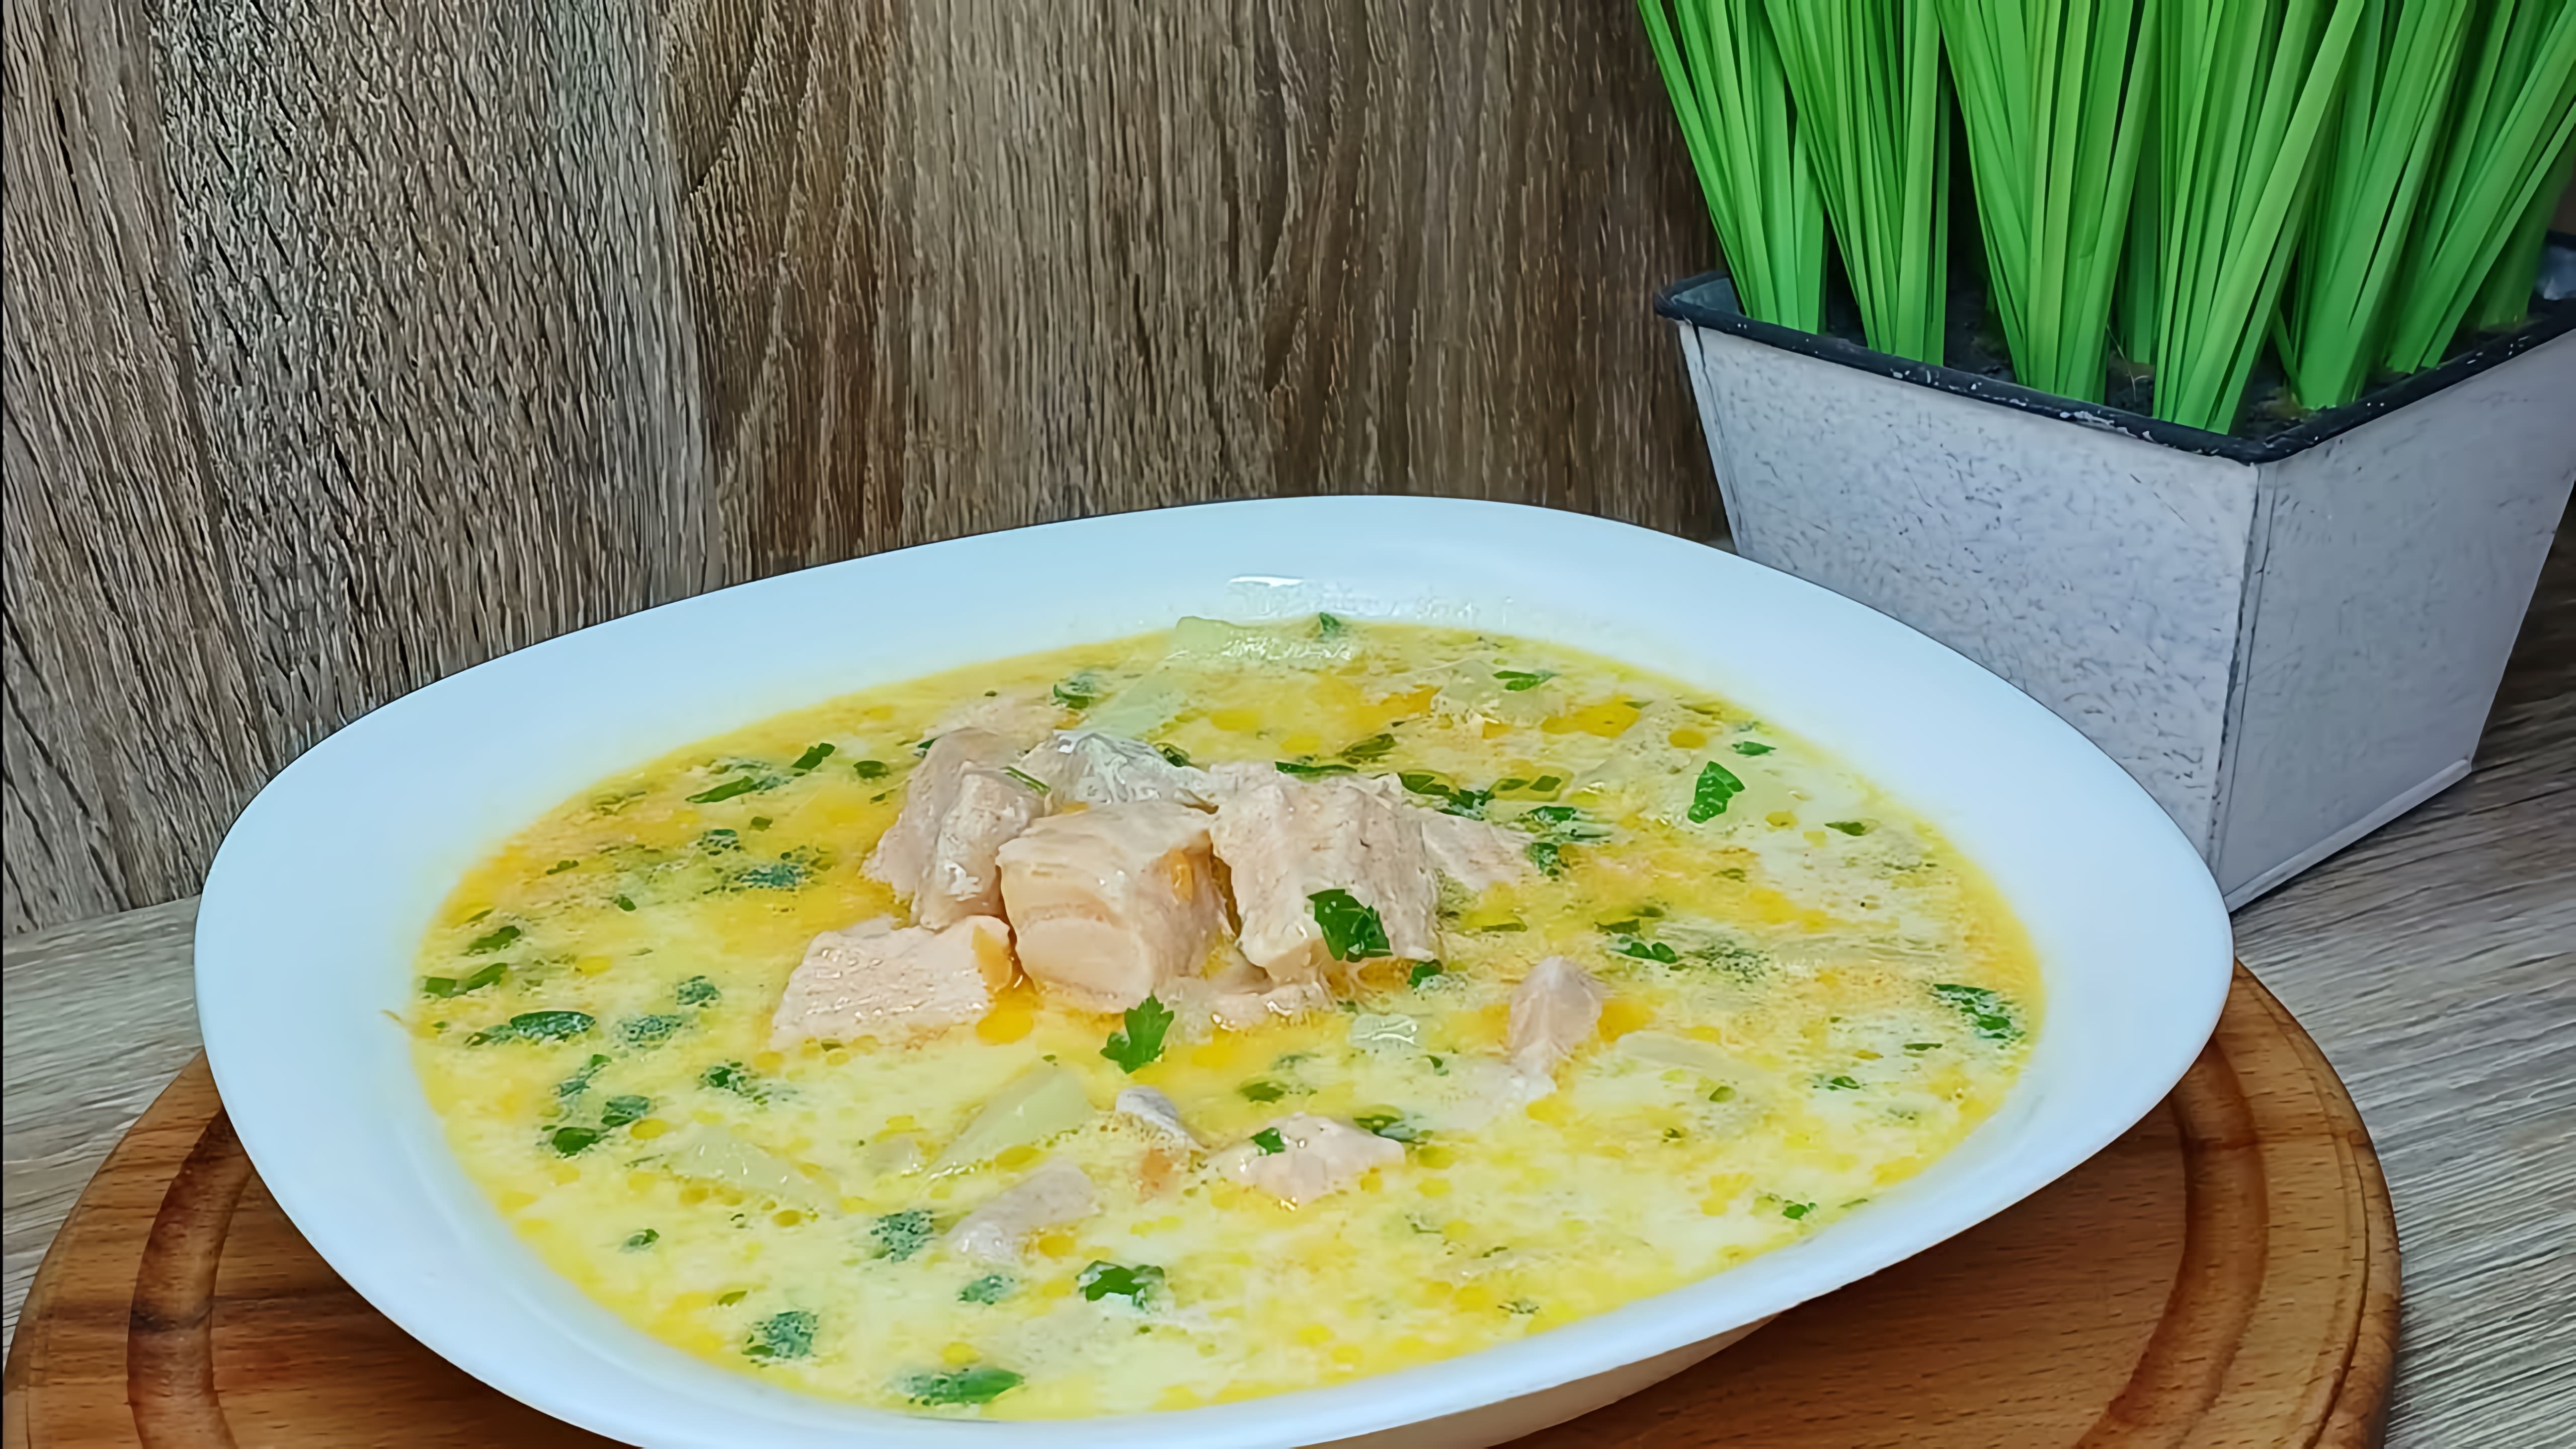 Сырный суп с красной рыбой - это вкусное и питательное блюдо, которое можно приготовить в домашних условиях